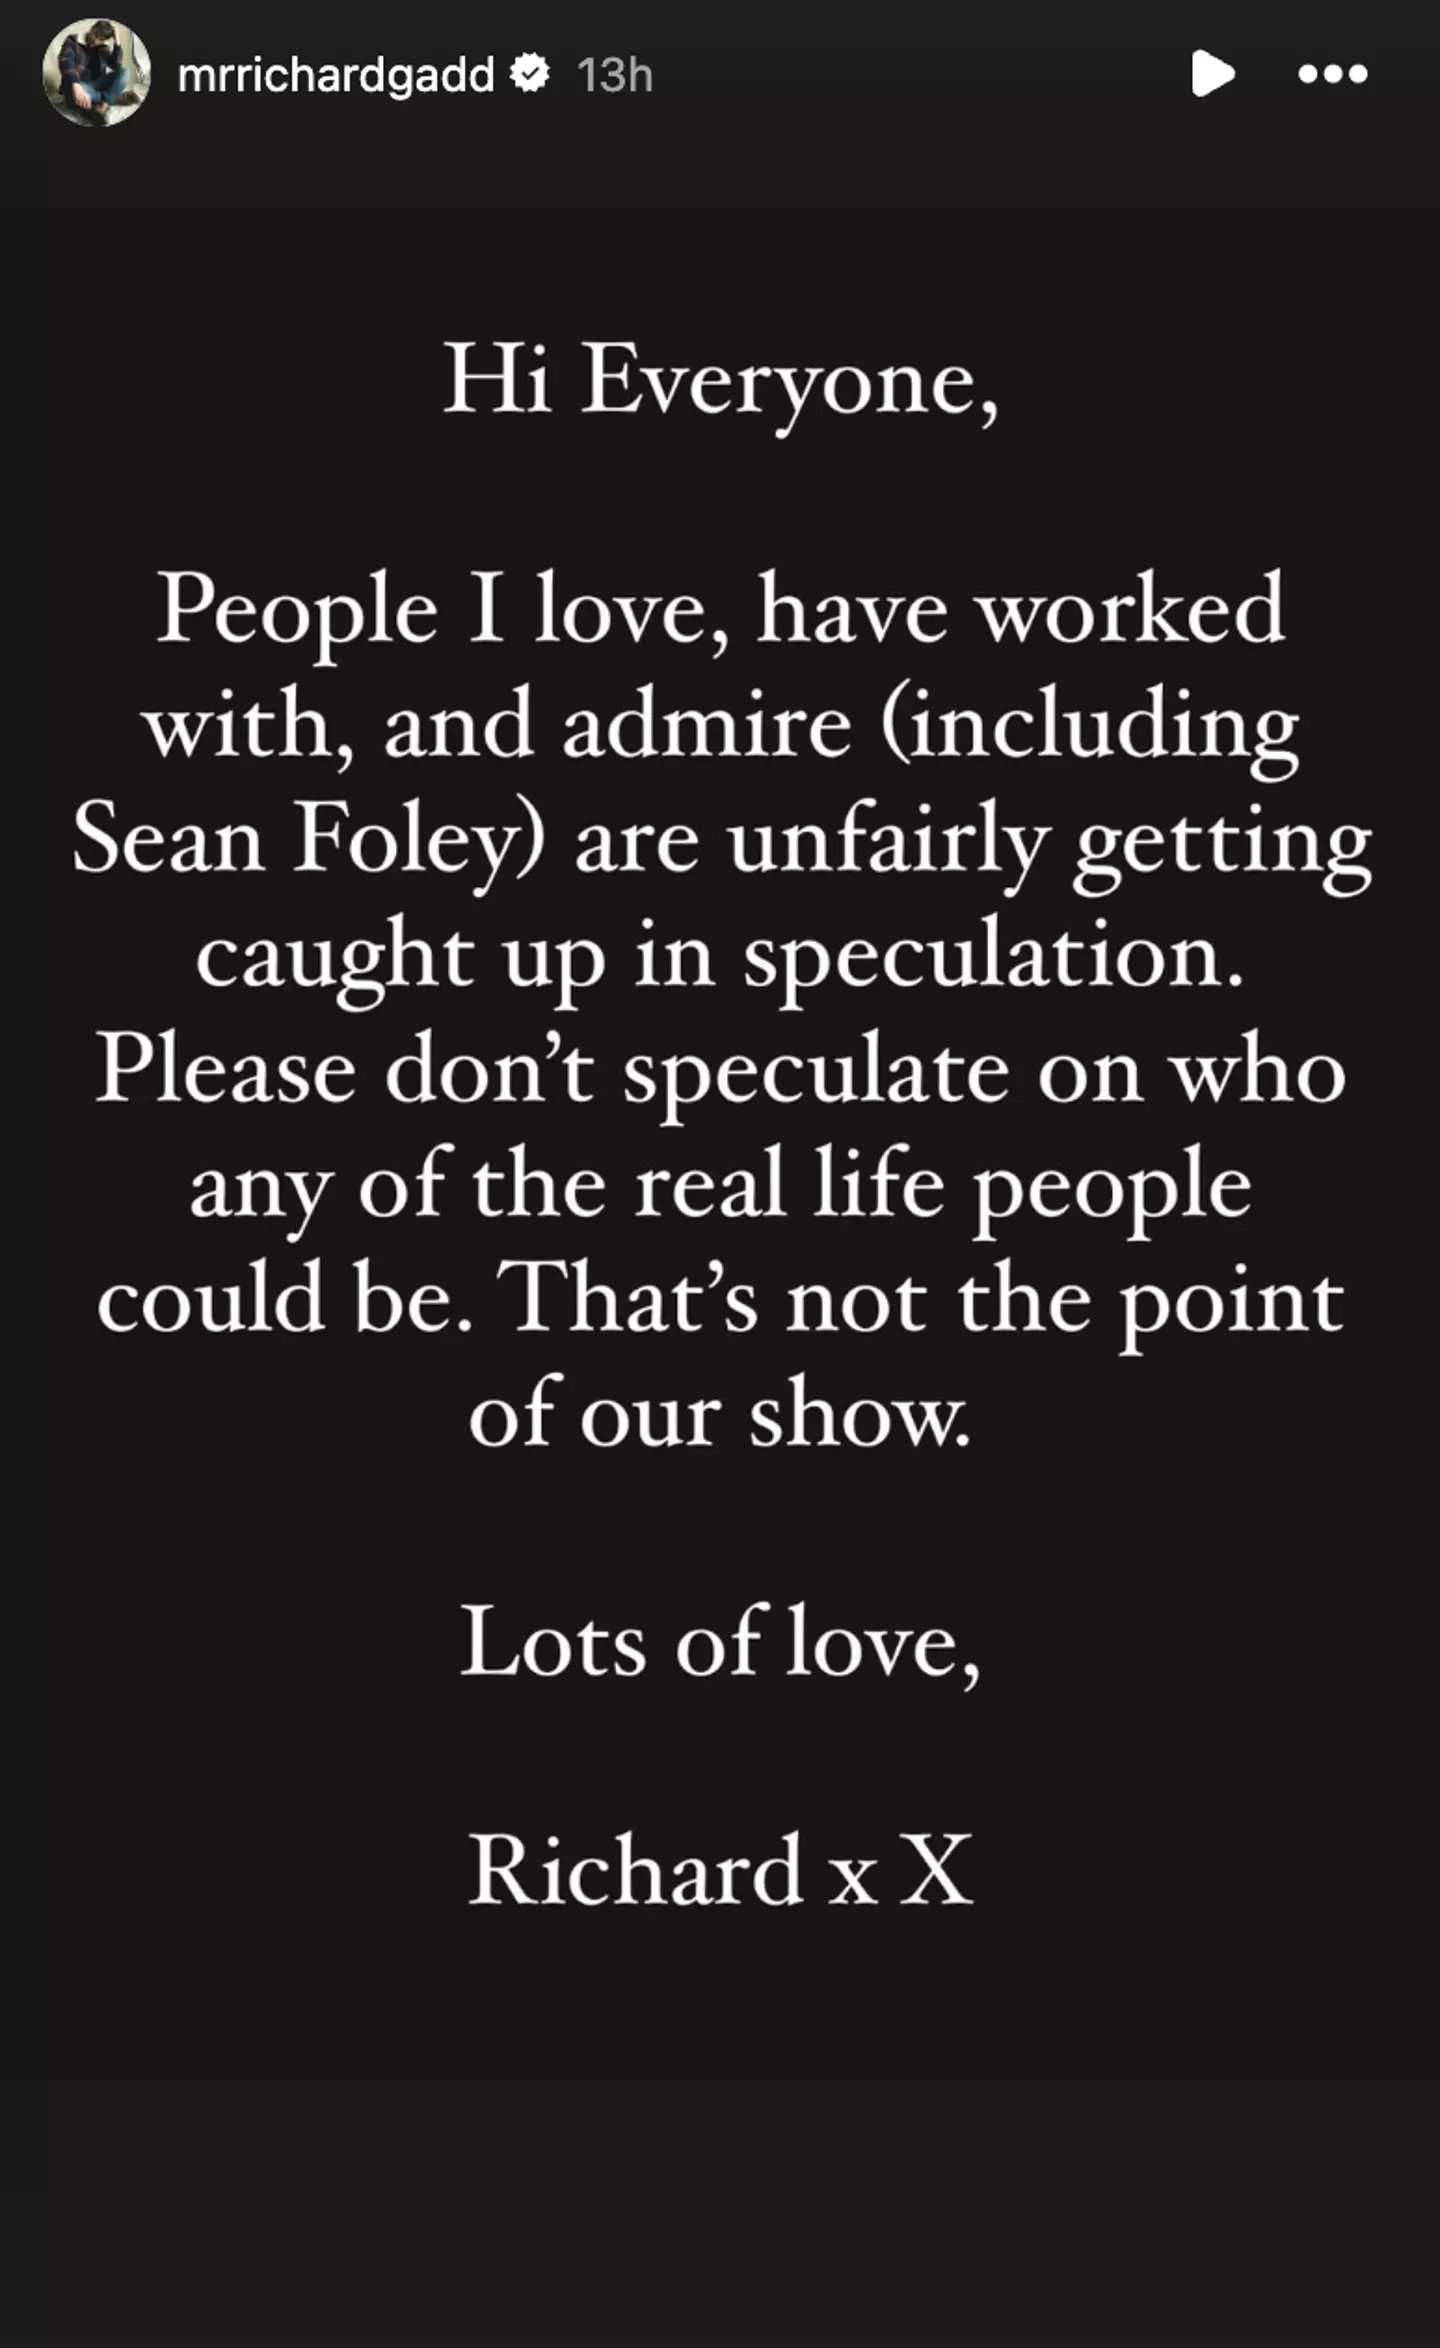 Richard posted his statement to Instagram. (Instagram/@mrrichardgadd)